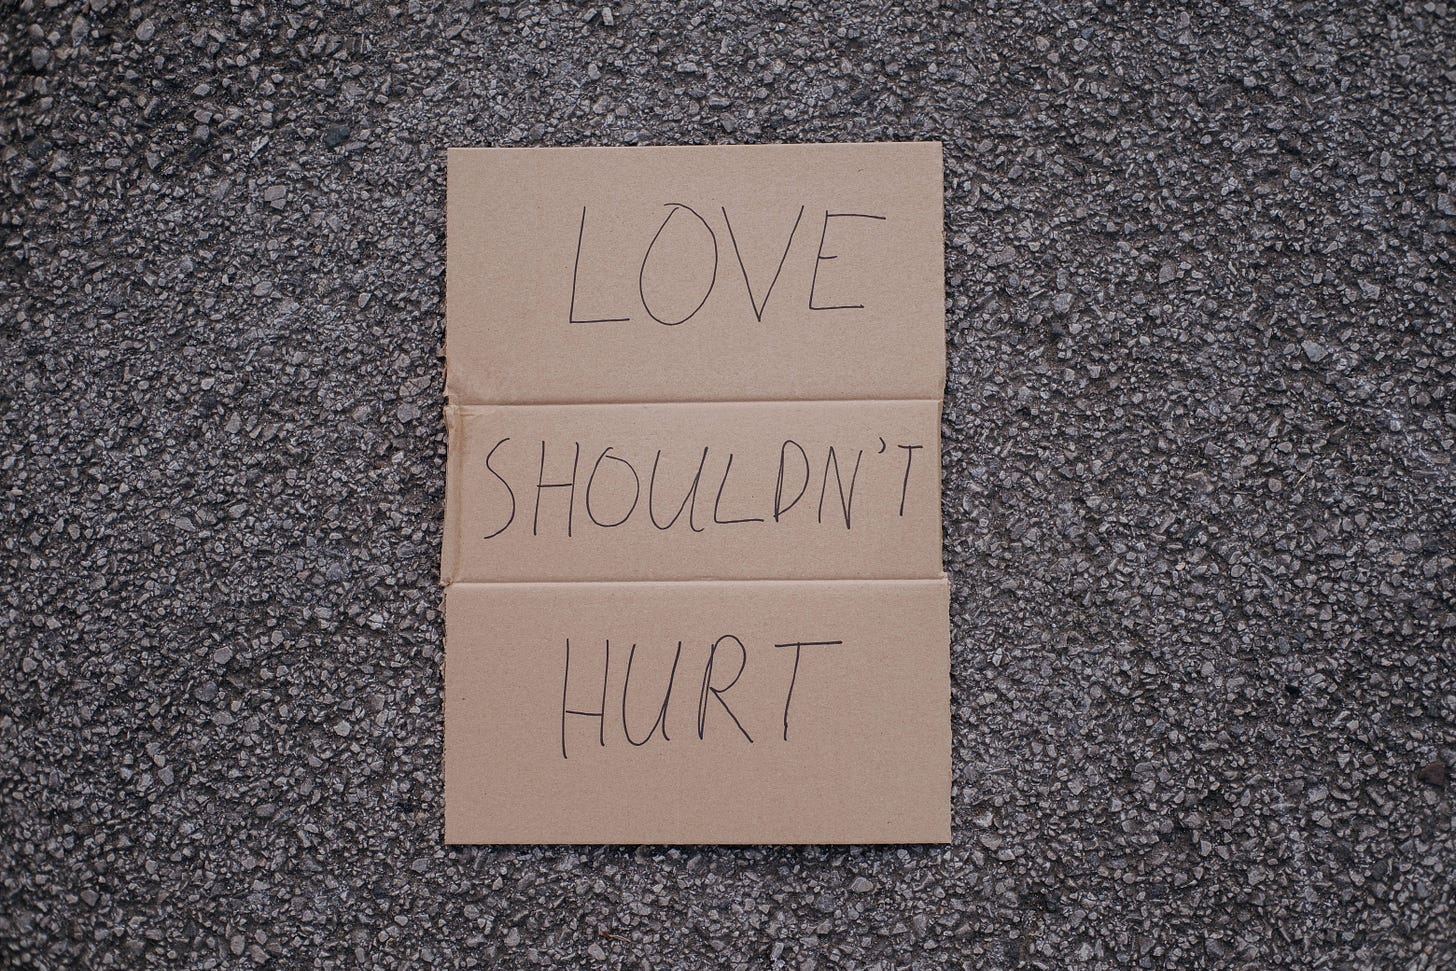 a piece of cardboard has the wrods written "love shouldn't hurt" written on it in black ink